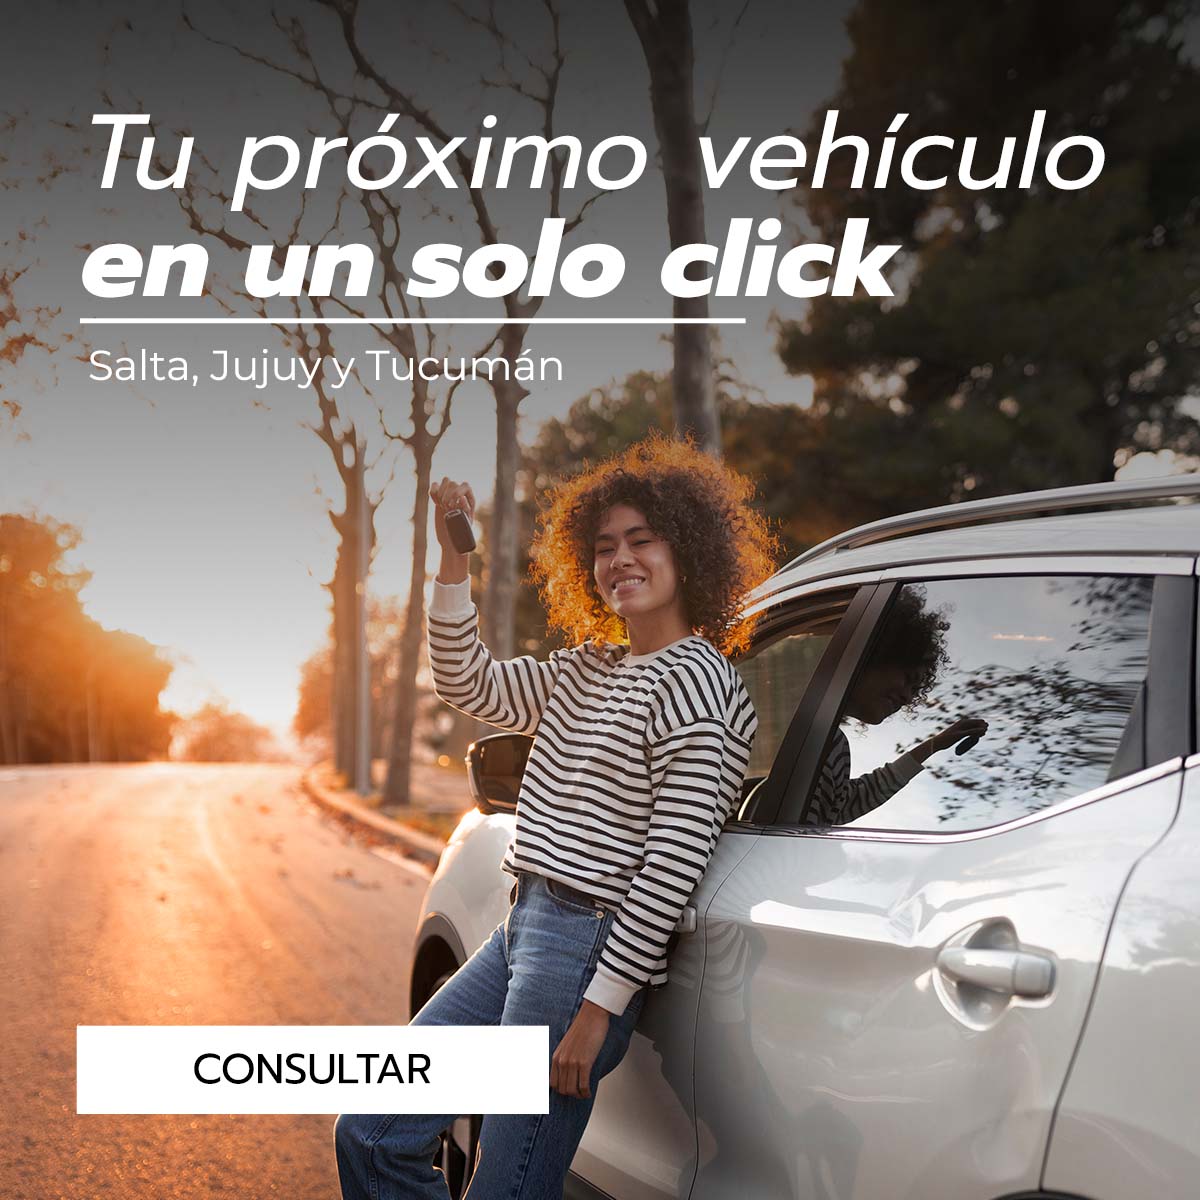 LOX Automotores es una tu tienda de autos nuevos 0 km, planes de ahorro y autos usados. Estamos en Salta, Jujuy y Tucumán. Tenemos un amplio y diverso catálogo de vehículos: autos, camionetas, camiones, utilitarios, pick-ups, tractores, etc.